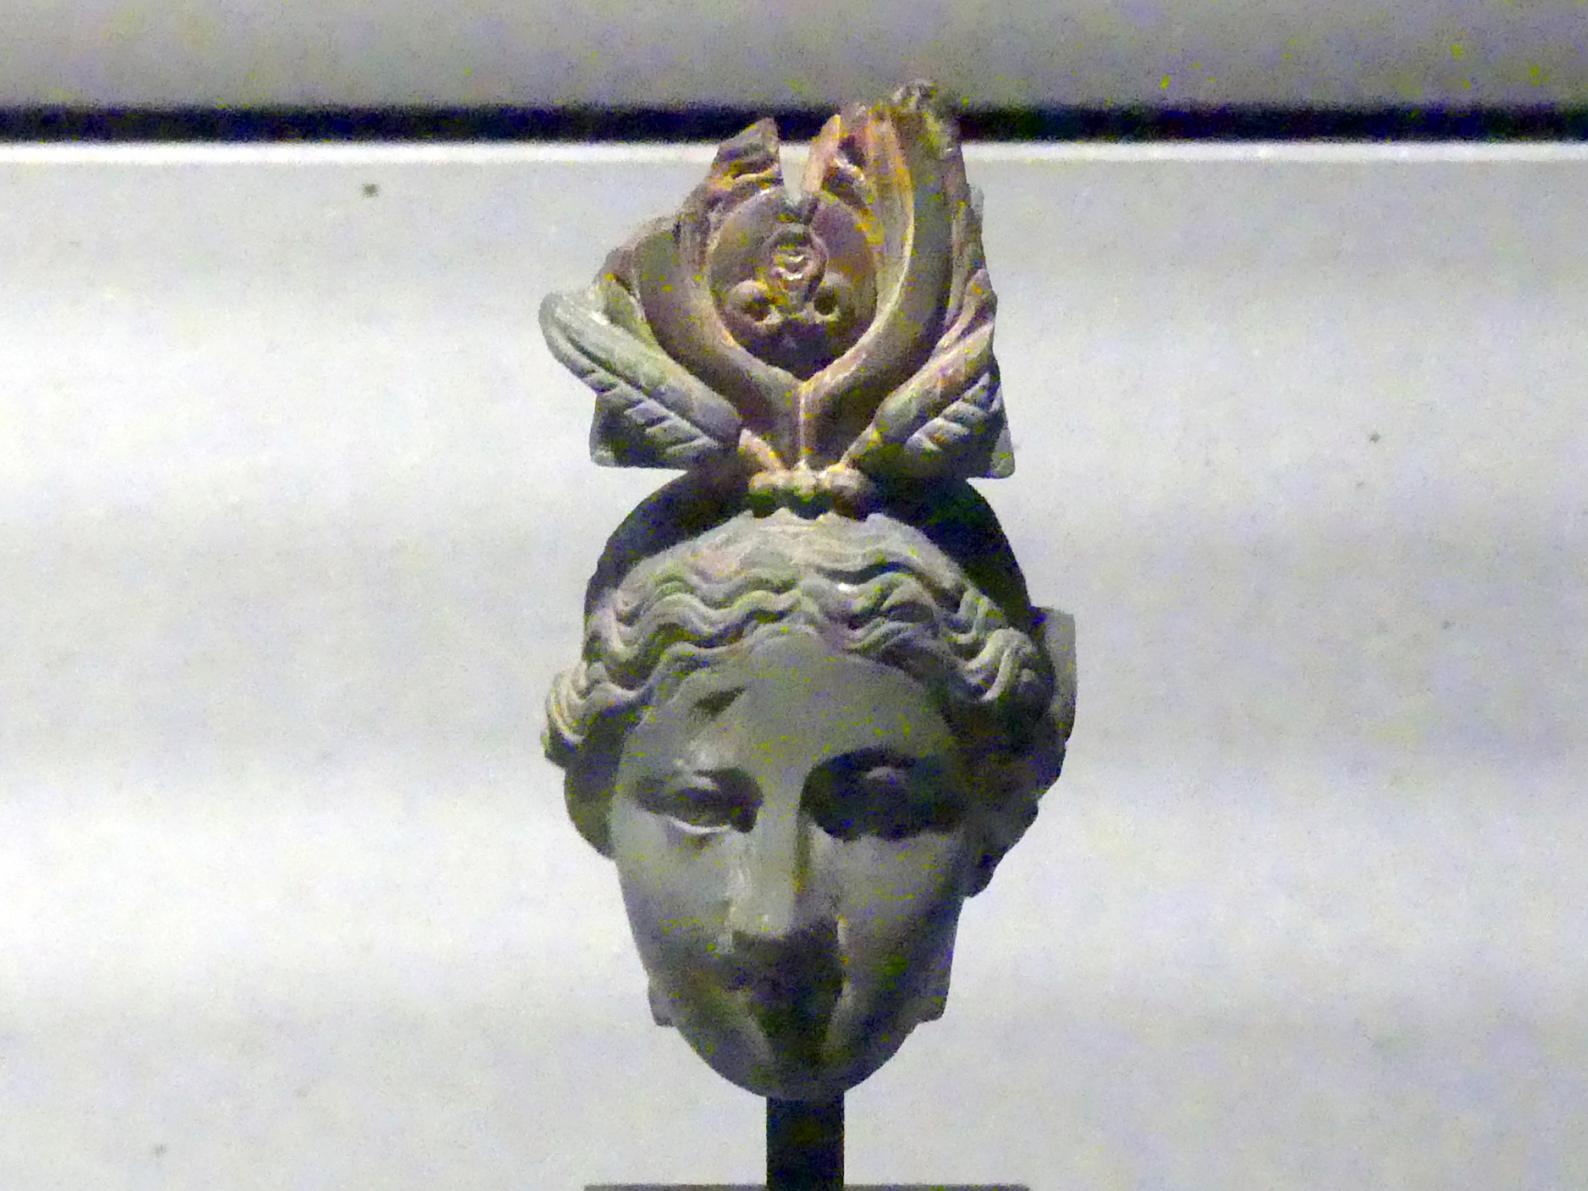 Kopf einer Statue der Göttin Isis, Römische Kaiserzeit, 27 v. Chr. - 54 n. Chr., 200, Bild 1/2